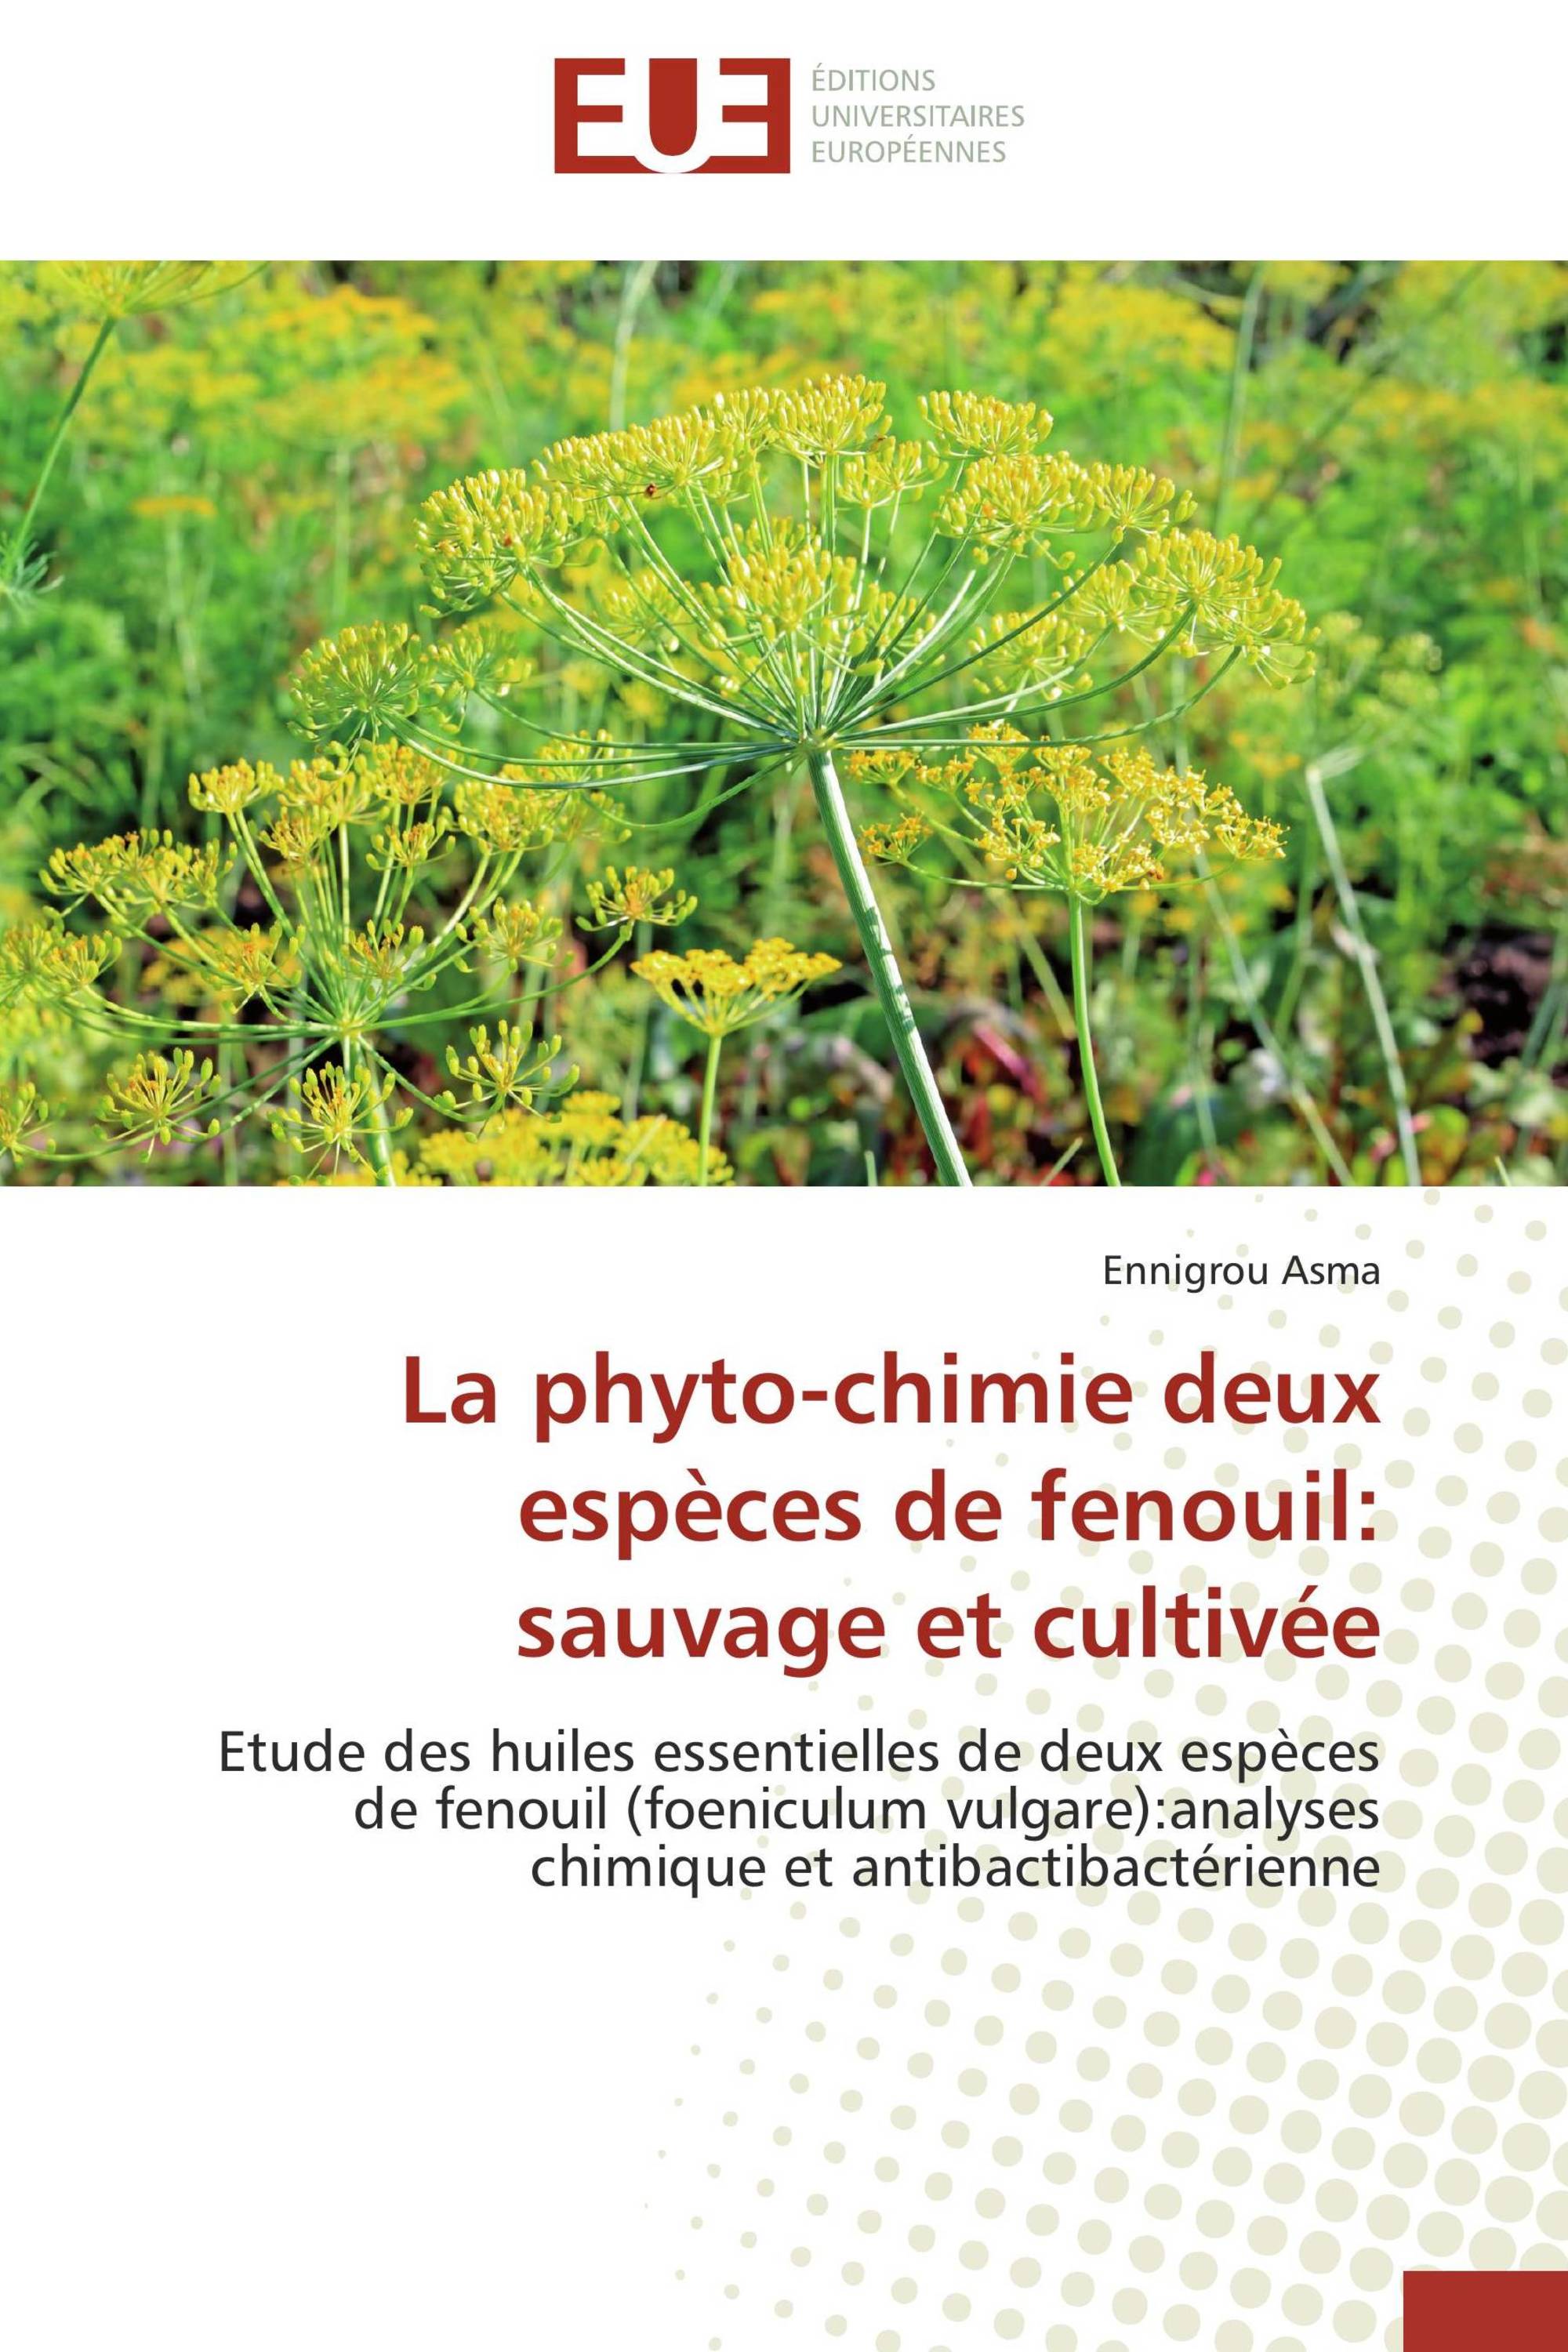 La phyto-chimie deux espèces de fenouil: sauvage et cultivée